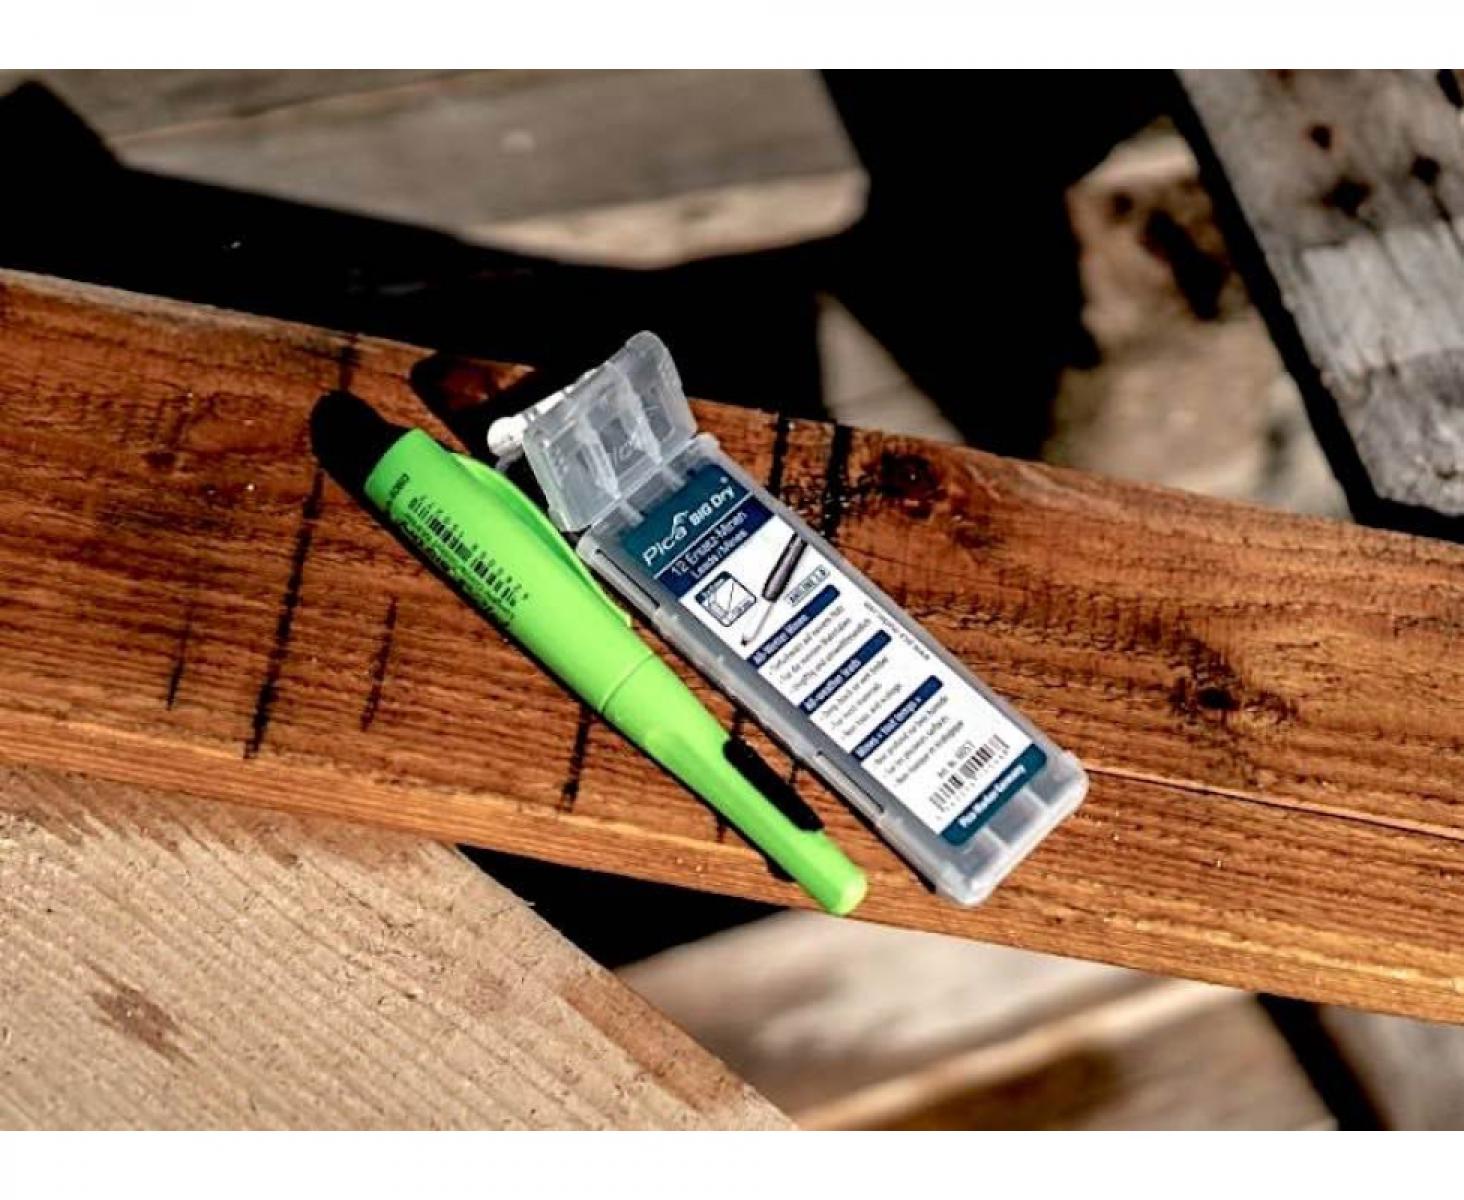 картинка Грифели всепогодные Aniline для карандаша Pica BIG Dry 6051 12 пр. от магазина "Элит-инструмент"